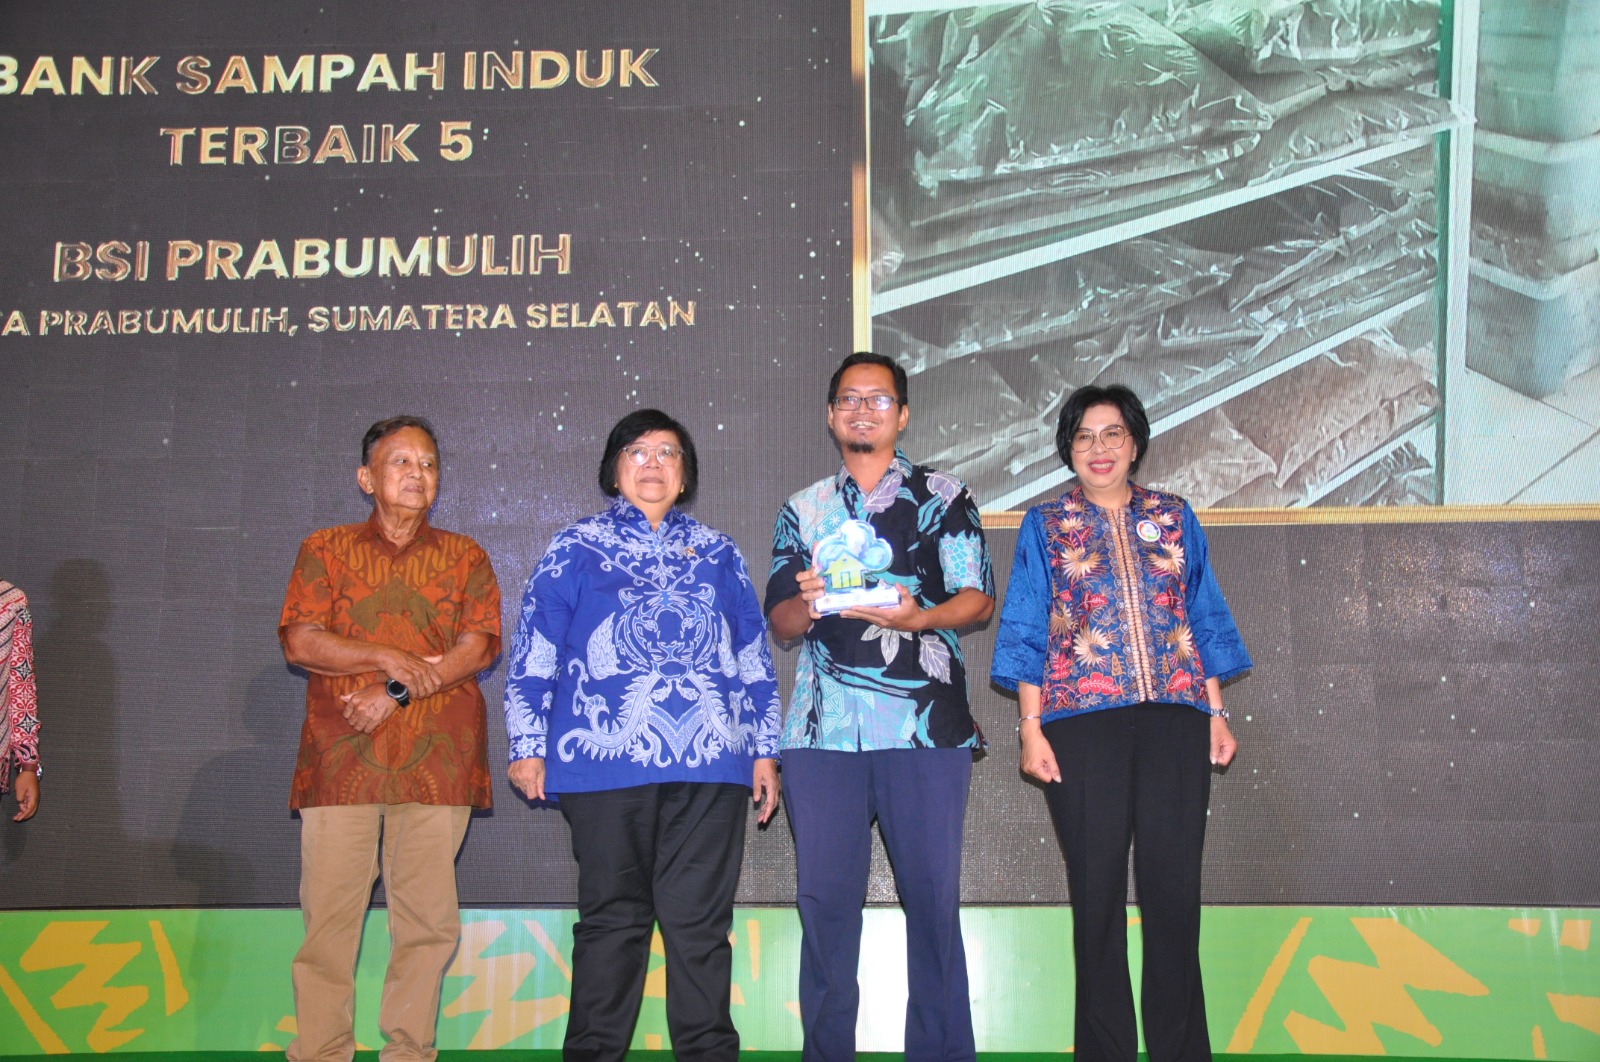 Bank Sampah Prabumulih Terima Penghargaan dari KLHK, Bank Sampah Induk Terbaik 5 se Indonesia 